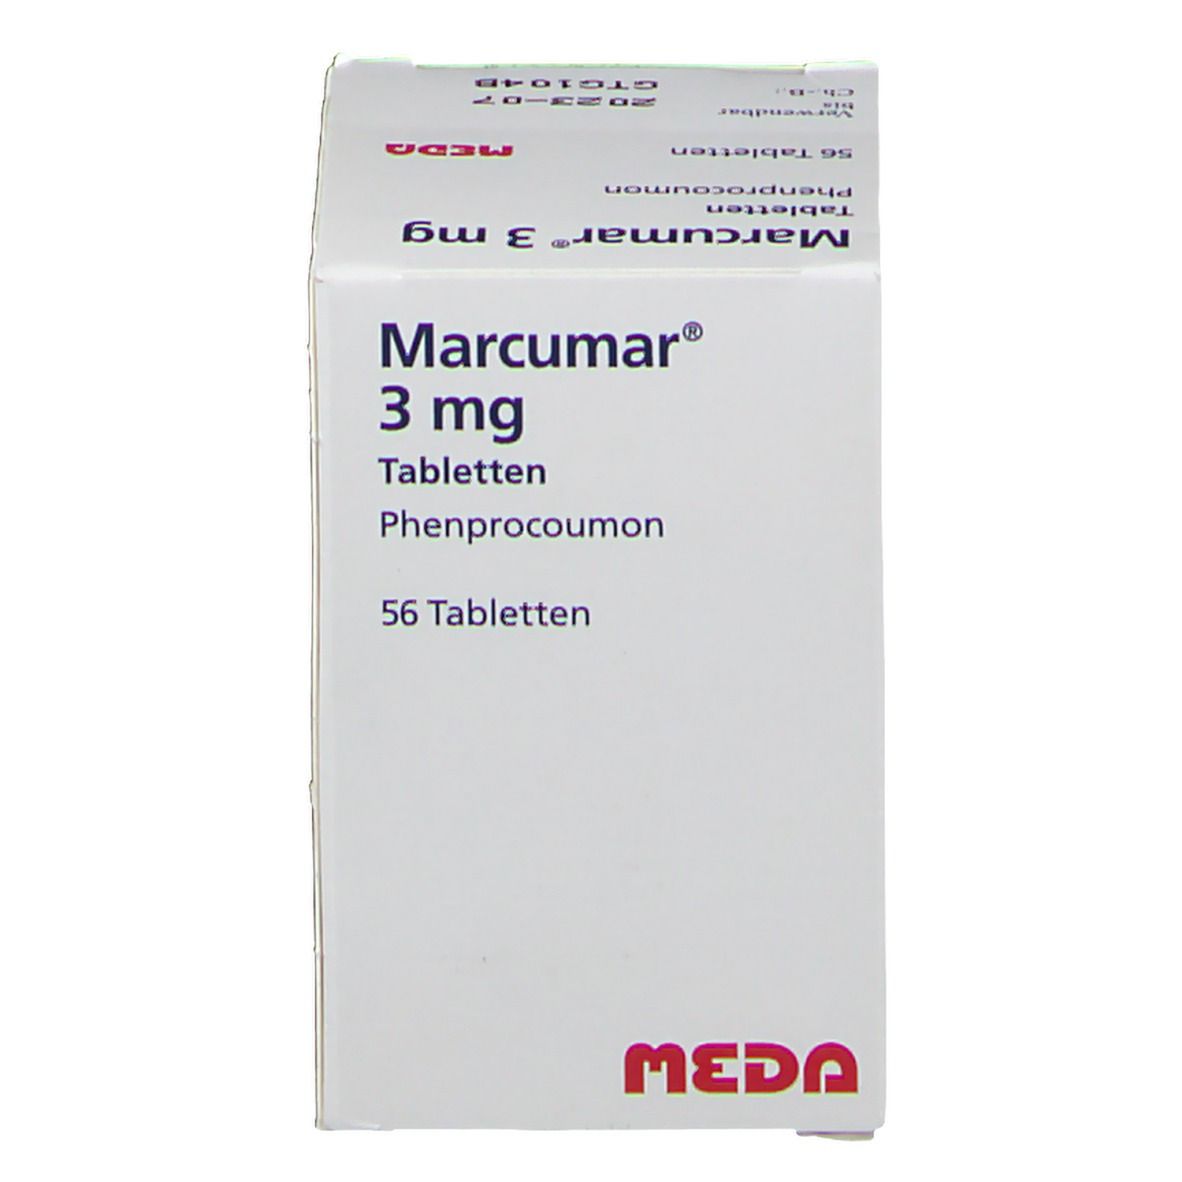 Marcumar® 3 mg